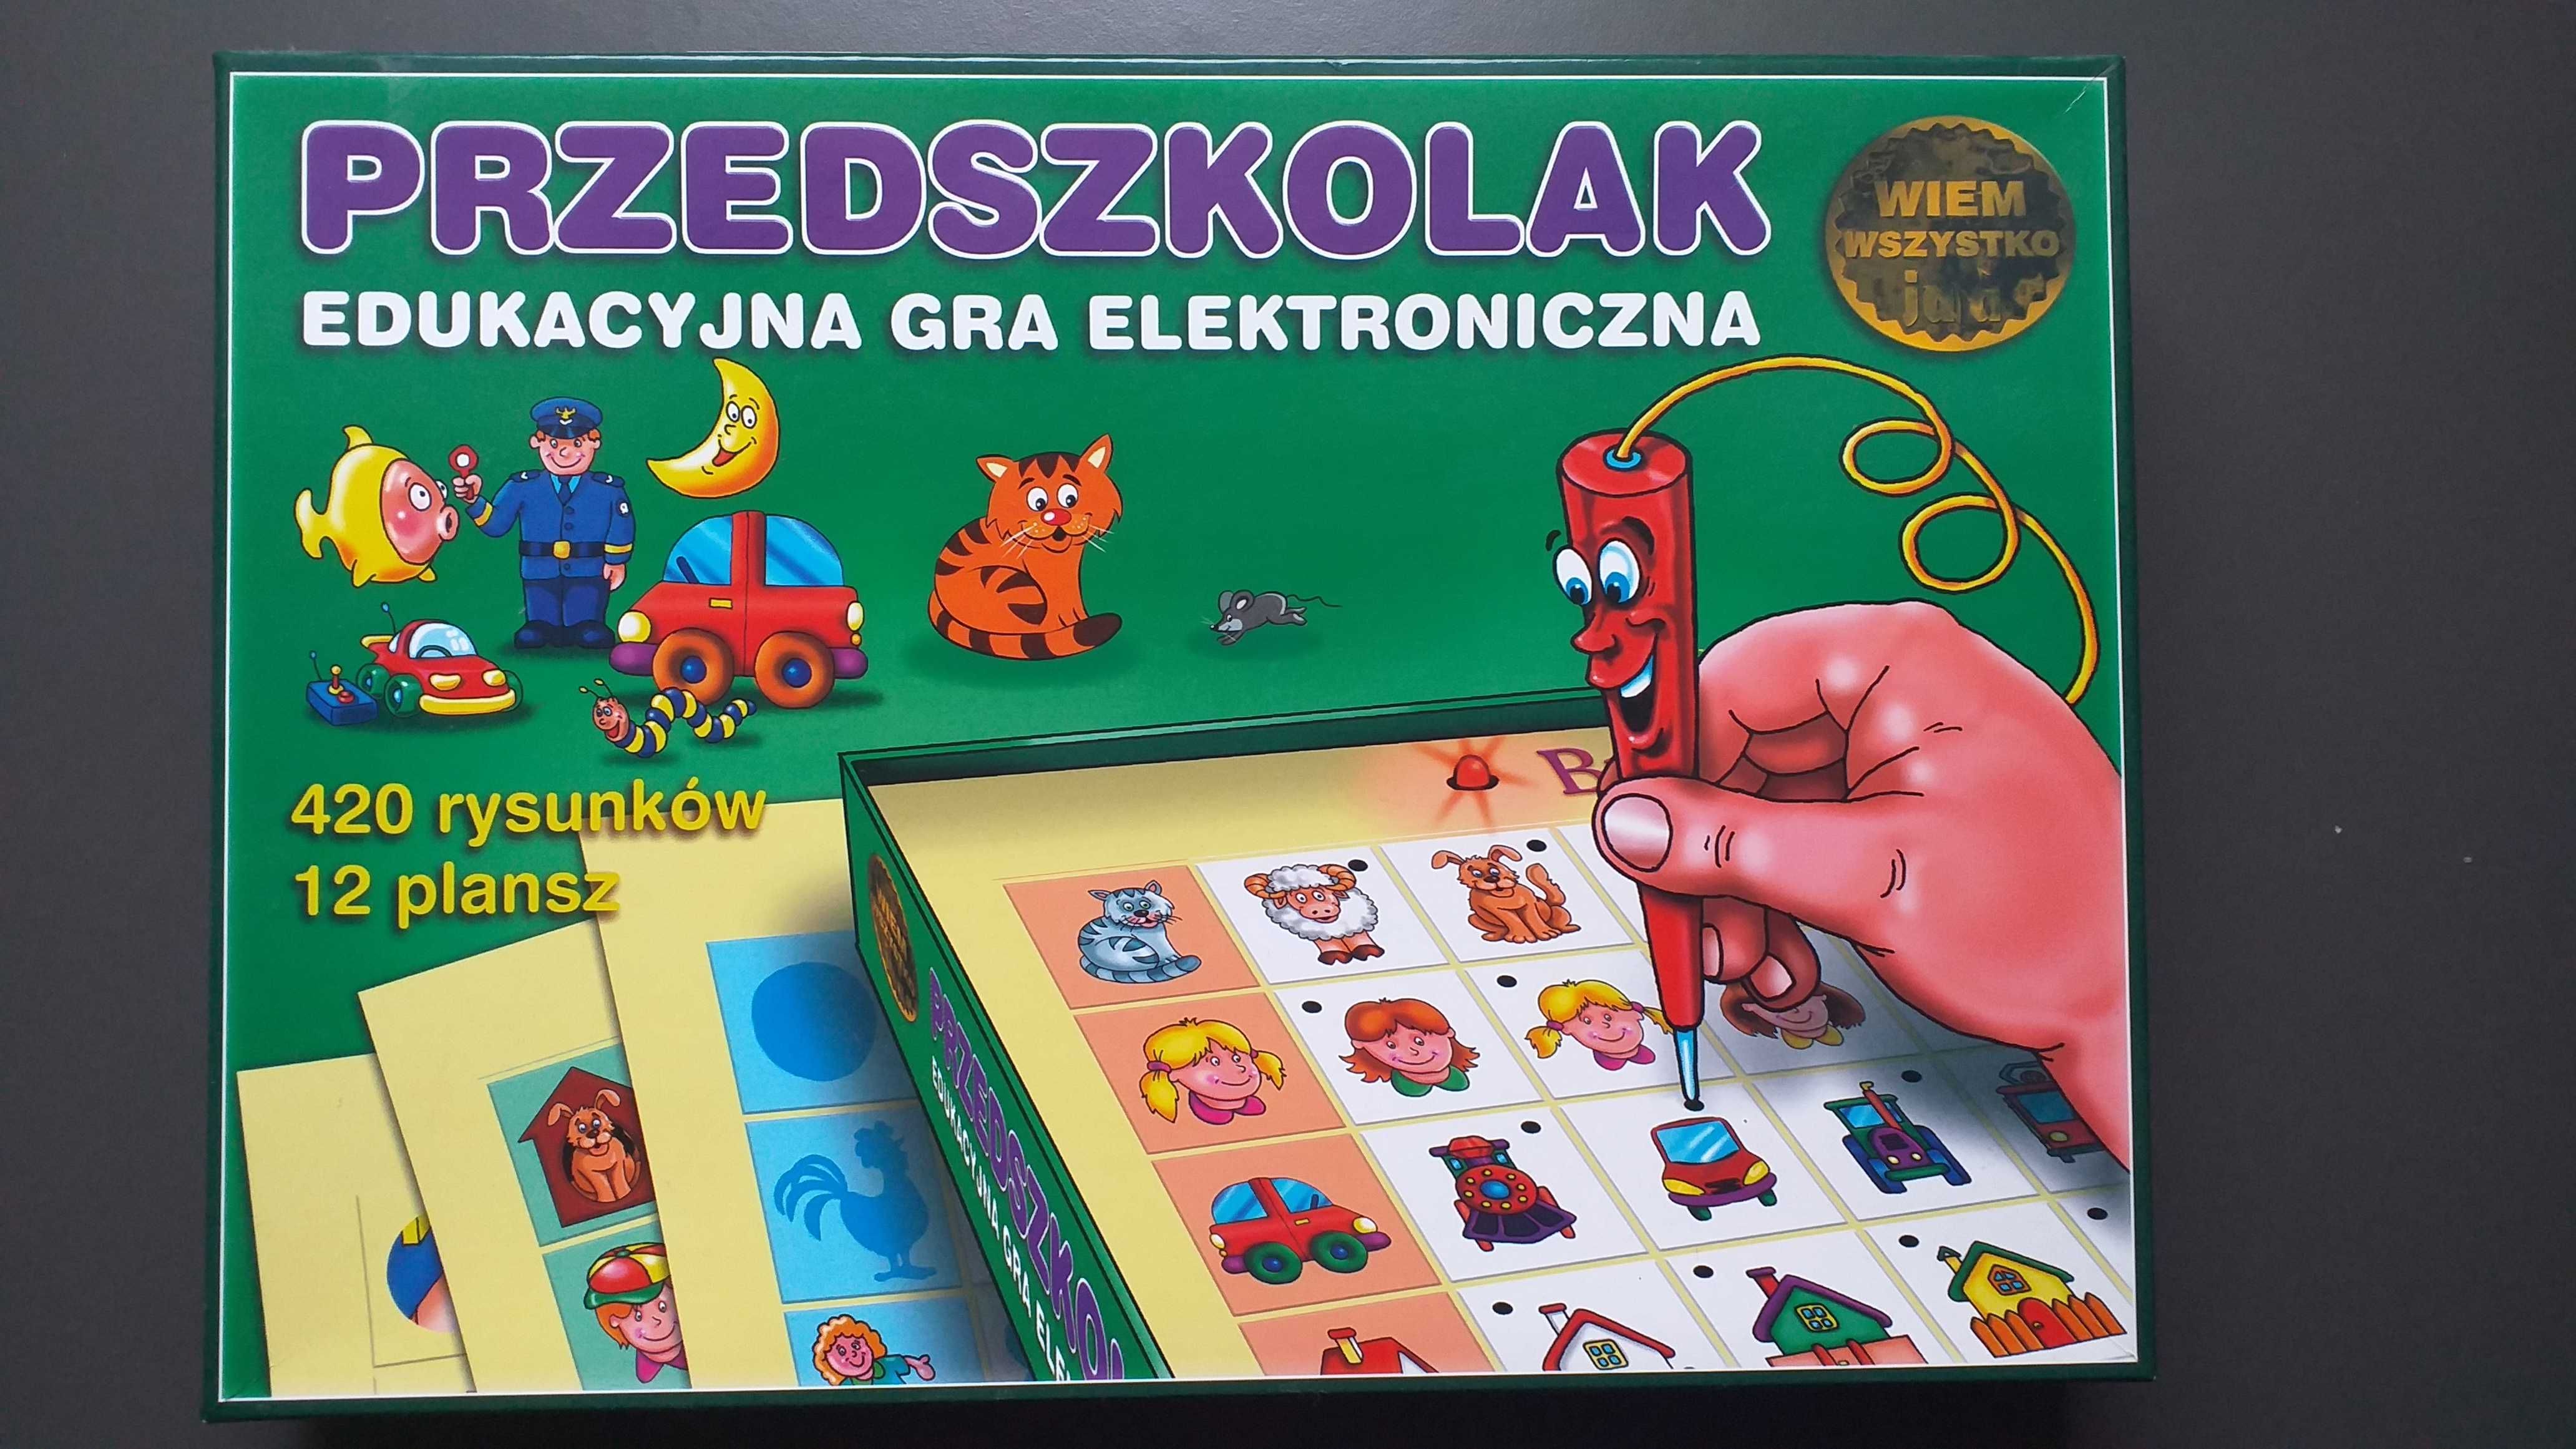 Edukacyjna gra elektroniczna "Przedszkolak"